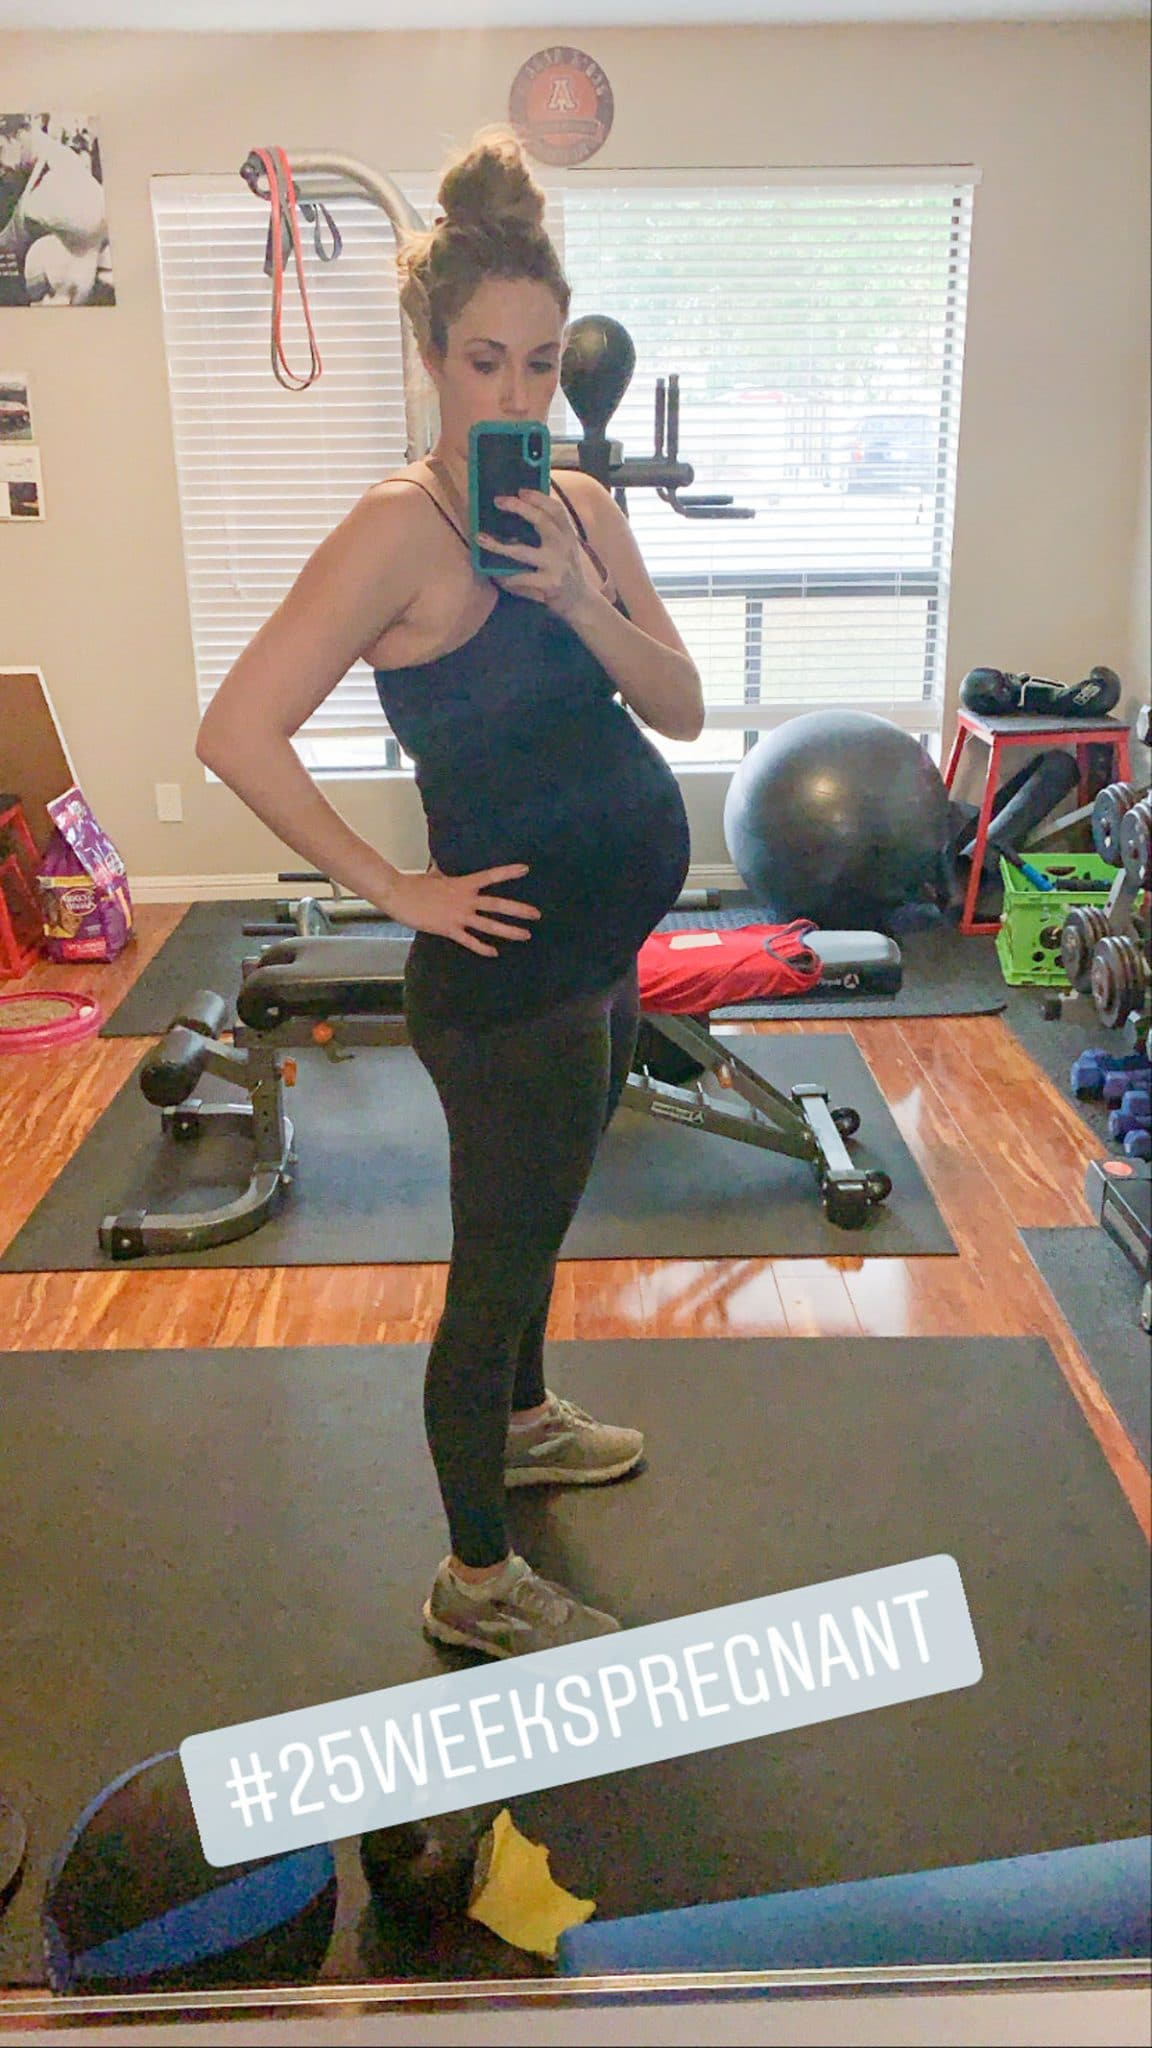 25 weeks pregnant